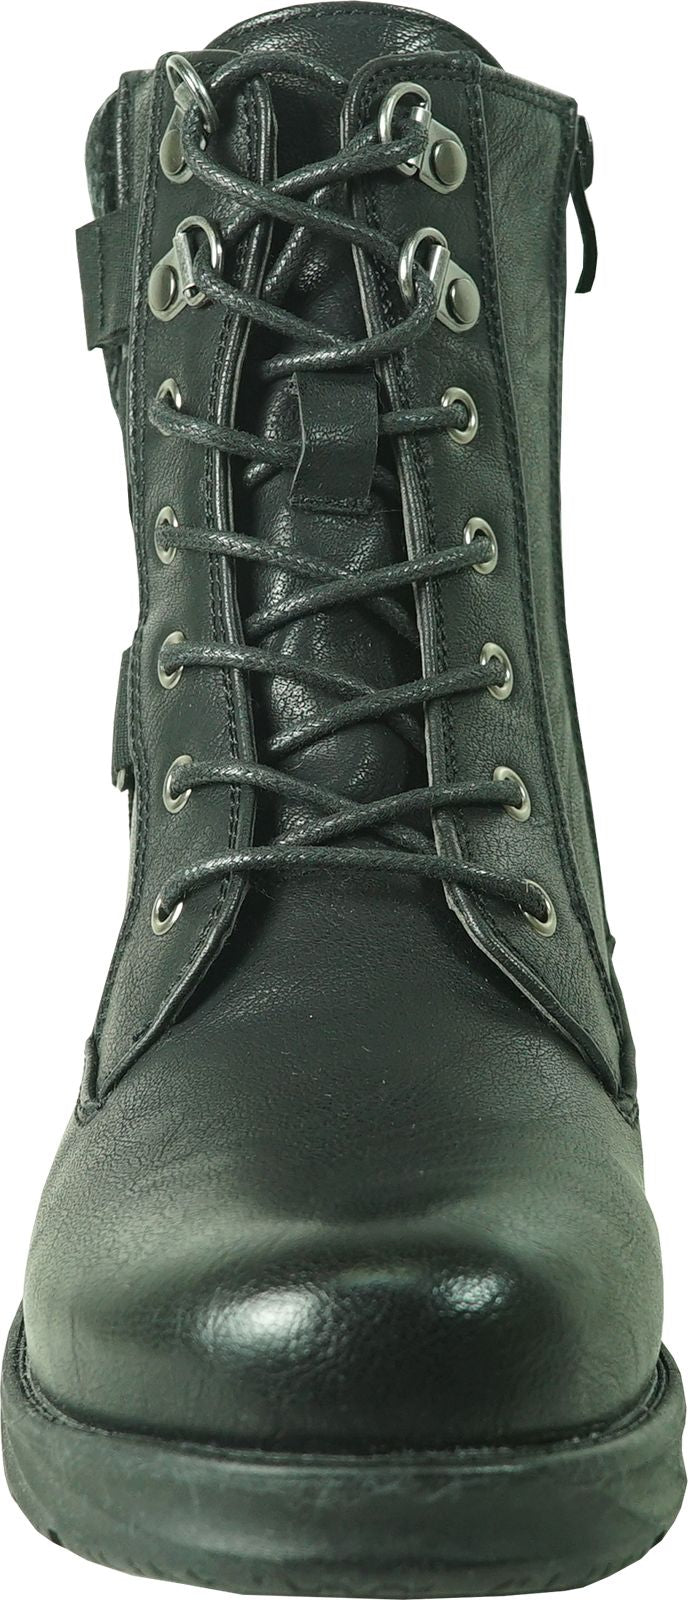 Vangelo Boots Hf0615 Black